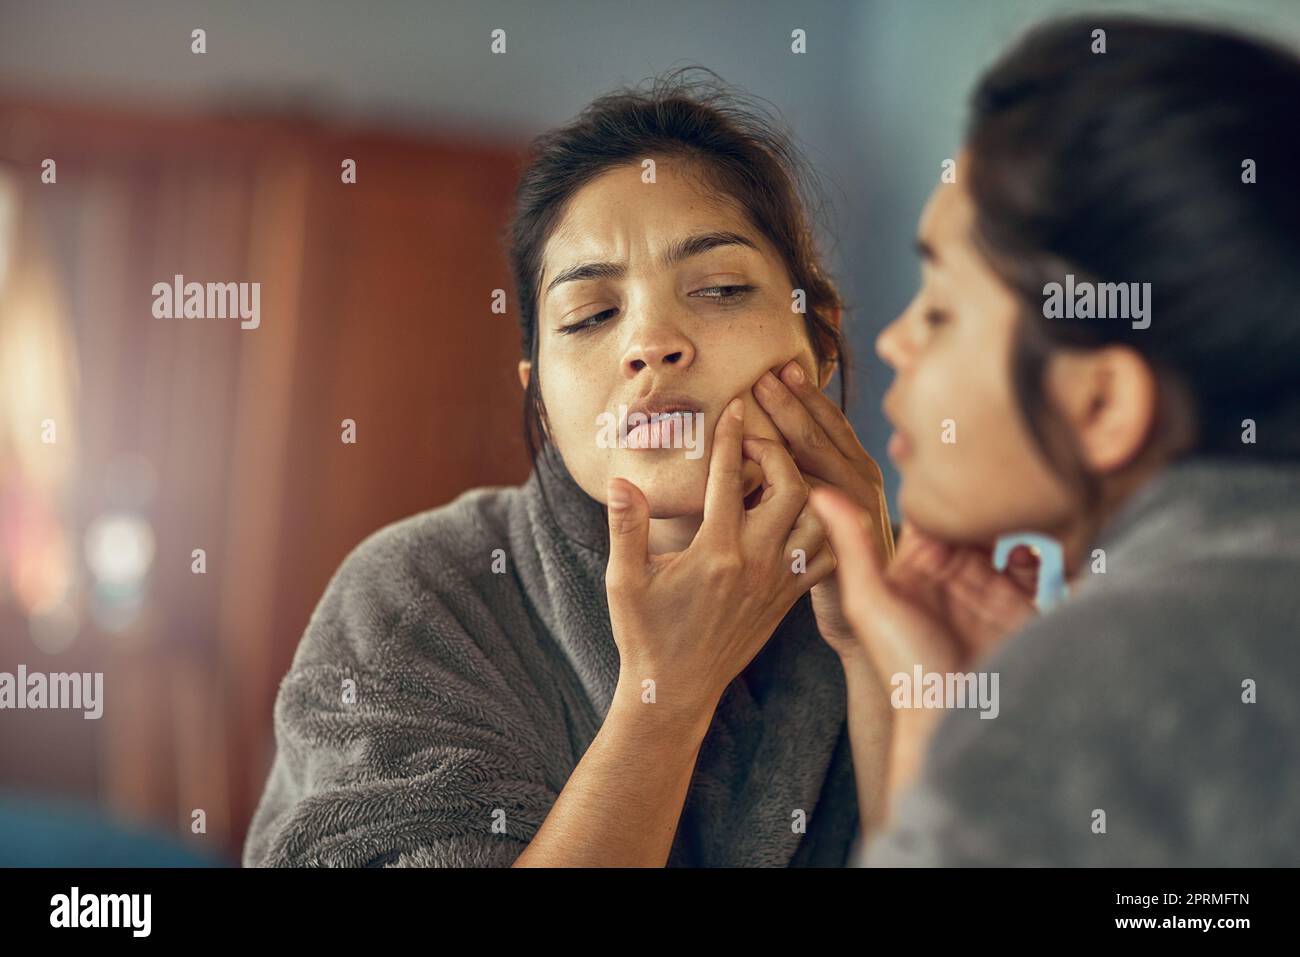 C'est un endroit que je vois. Une jeune femme frognant tout en examinant une imperfection sur sa peau dans le miroir. Banque D'Images